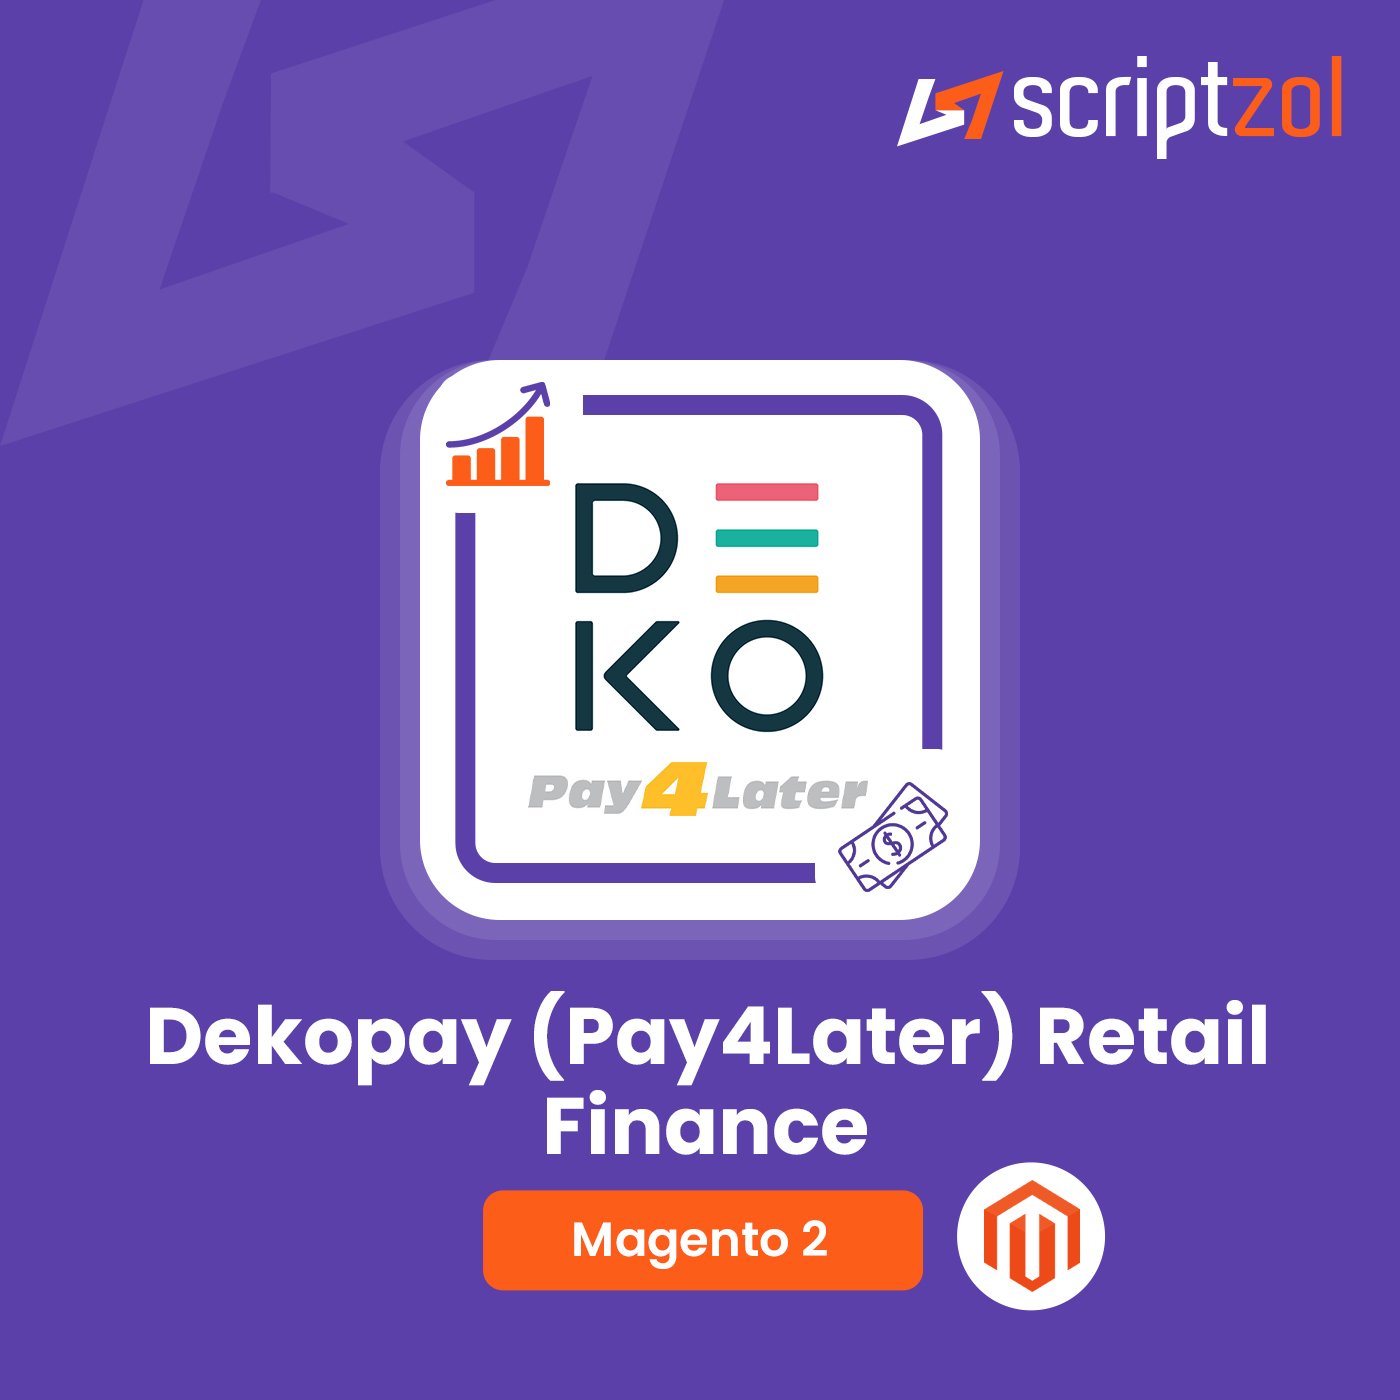 Magento 2 Dekopay (Pay4Later) Retail Finance | Convenient Financing Solutions by DekoPay - Scriptzol